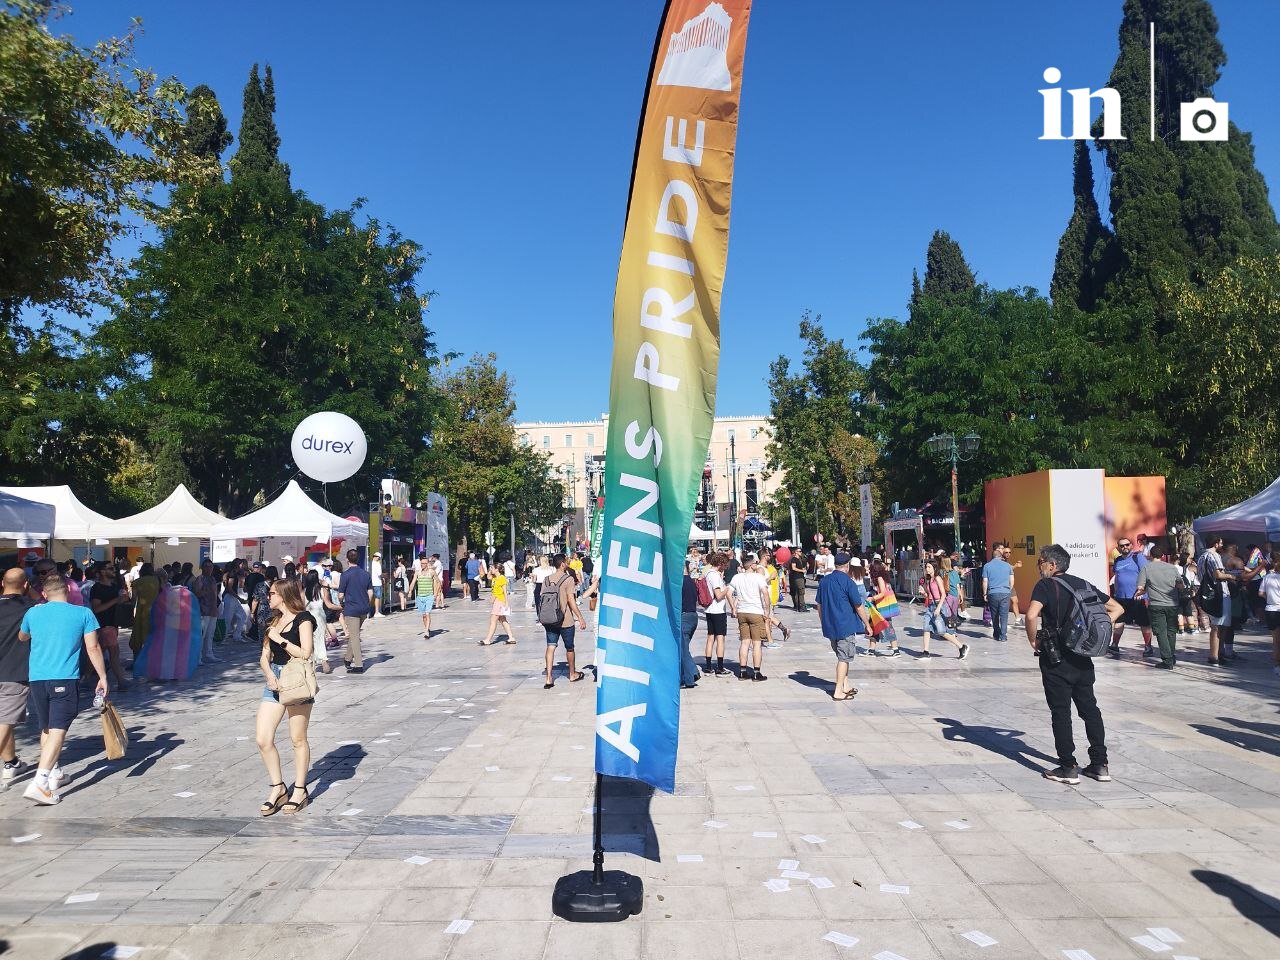 Athens Pride: «Ένας νόμος δεν αρκεί» – Πραγματική κοινωνική αλλαγή ζητά η ΛΟΑΤΚΙ+ κοινότητα